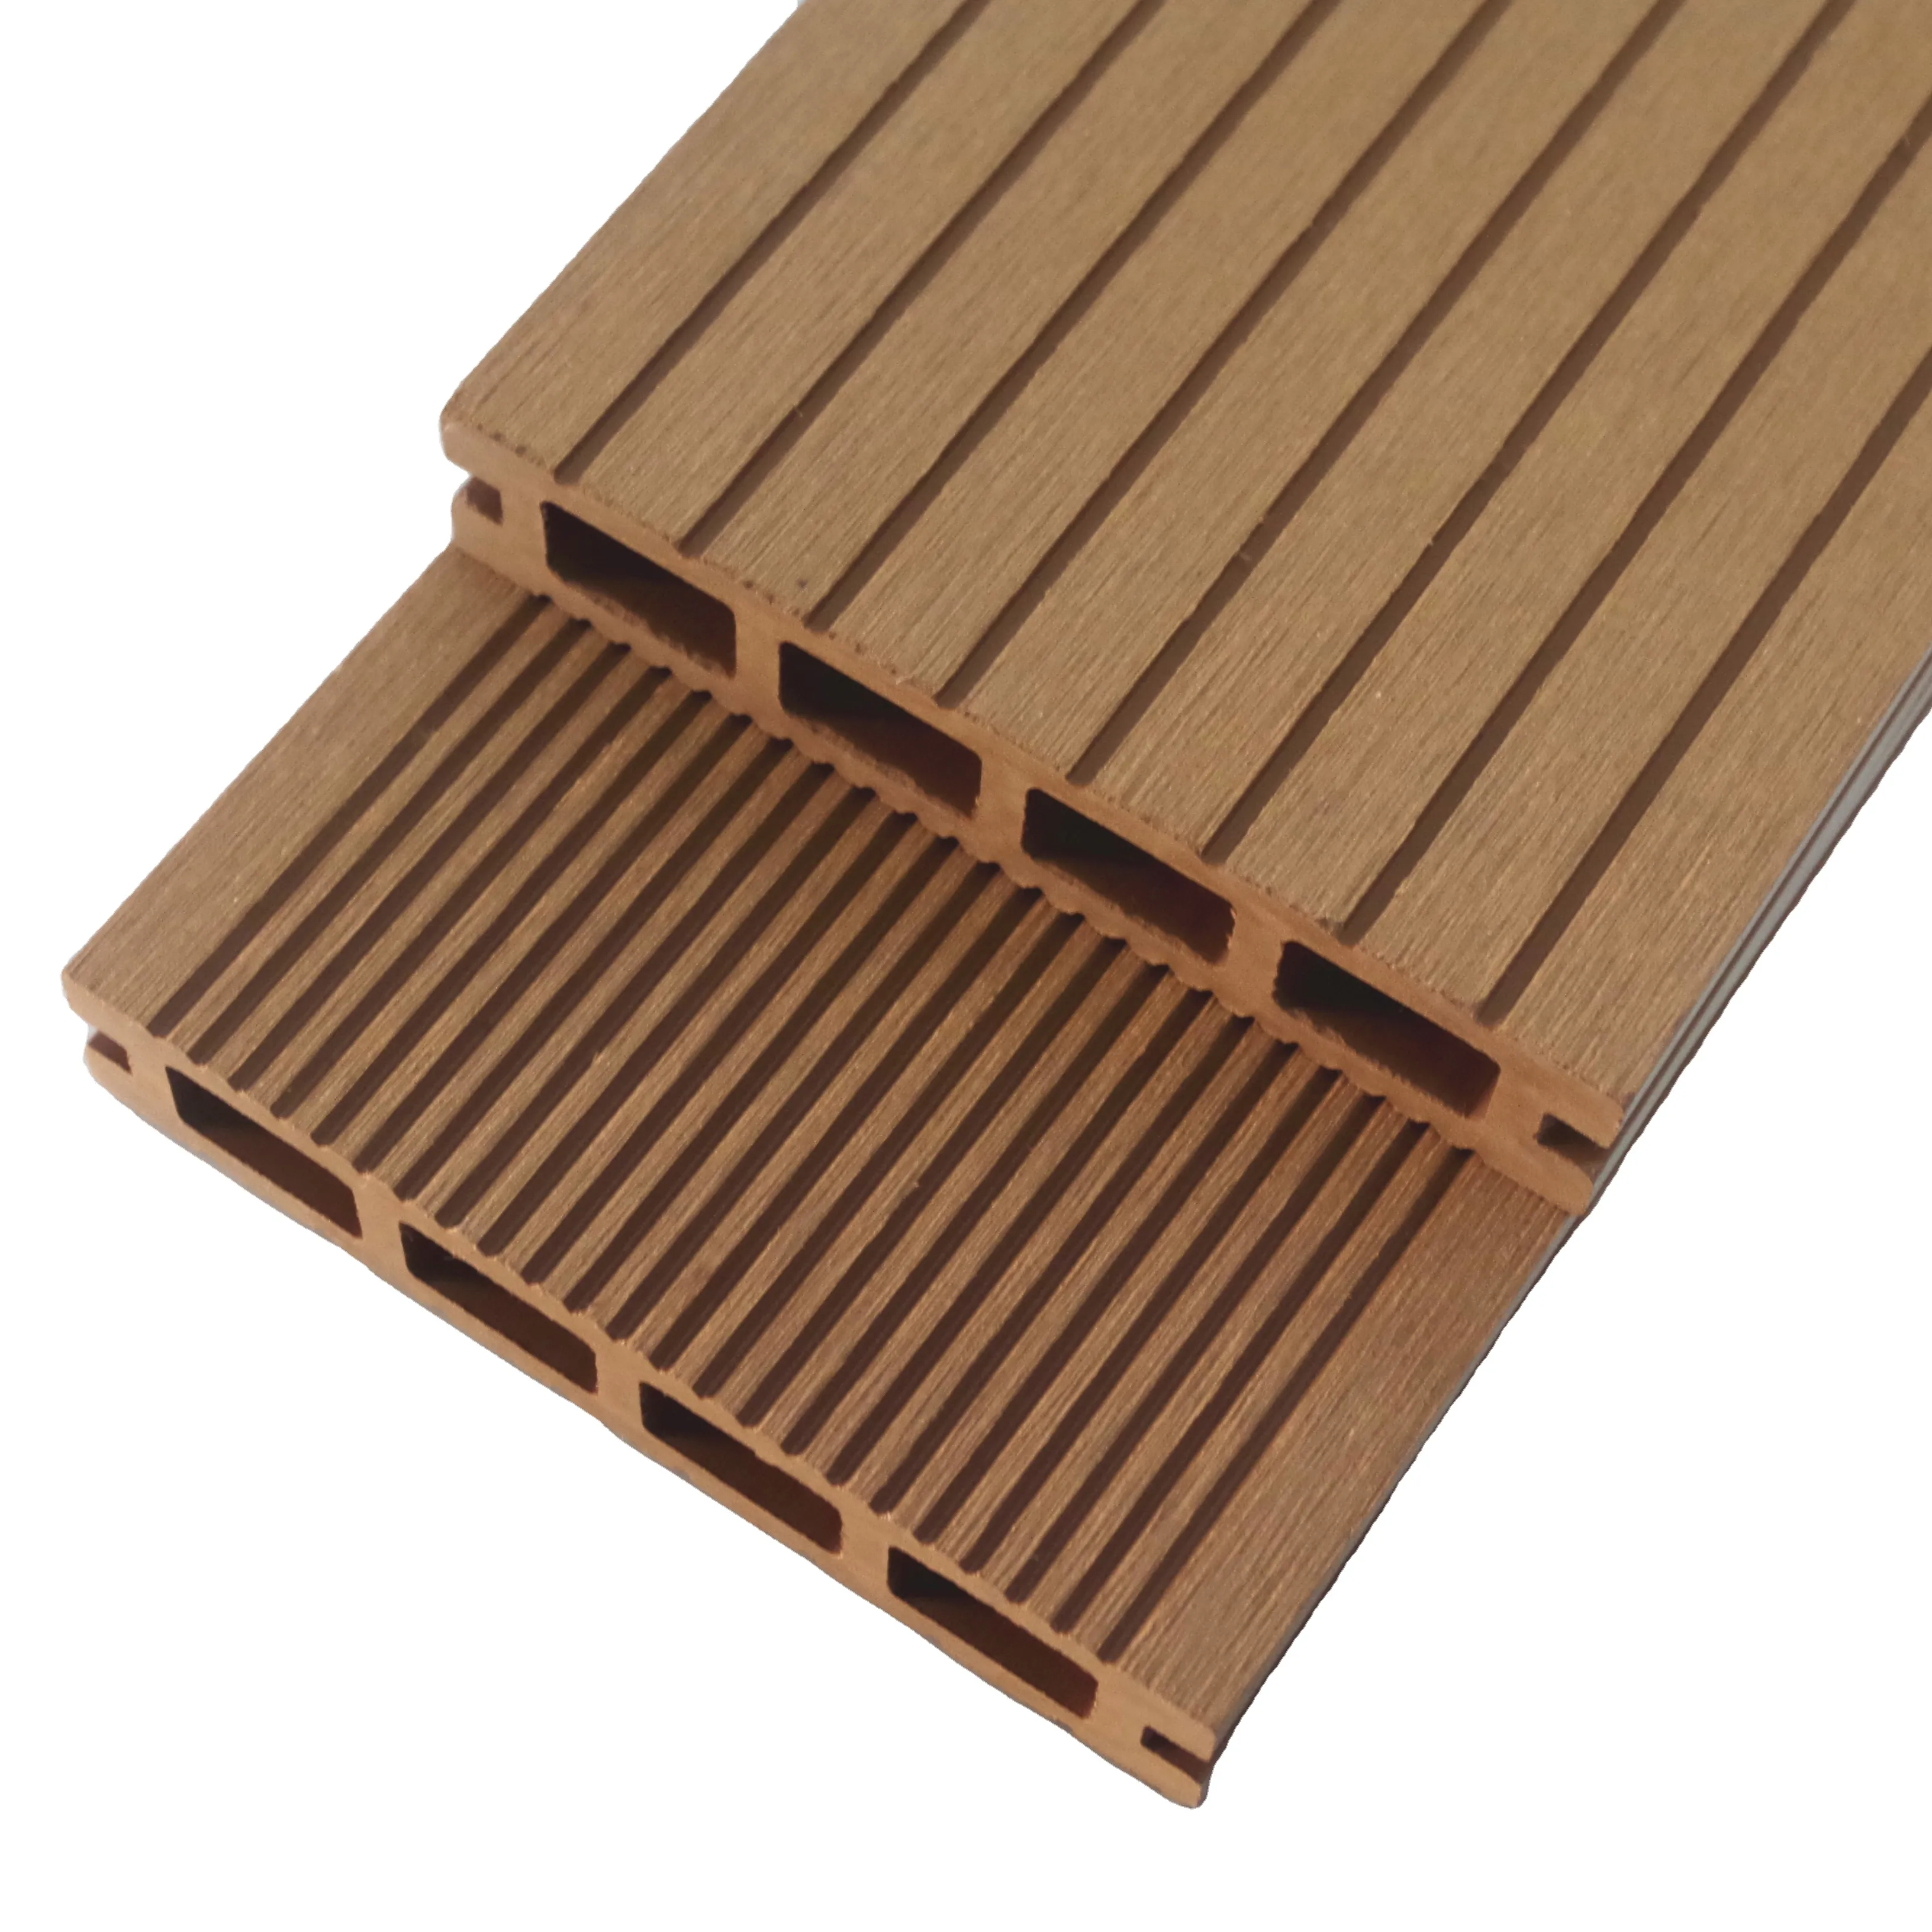 Suelo de cubierta wpc para exteriores, cubierta de madera hueca